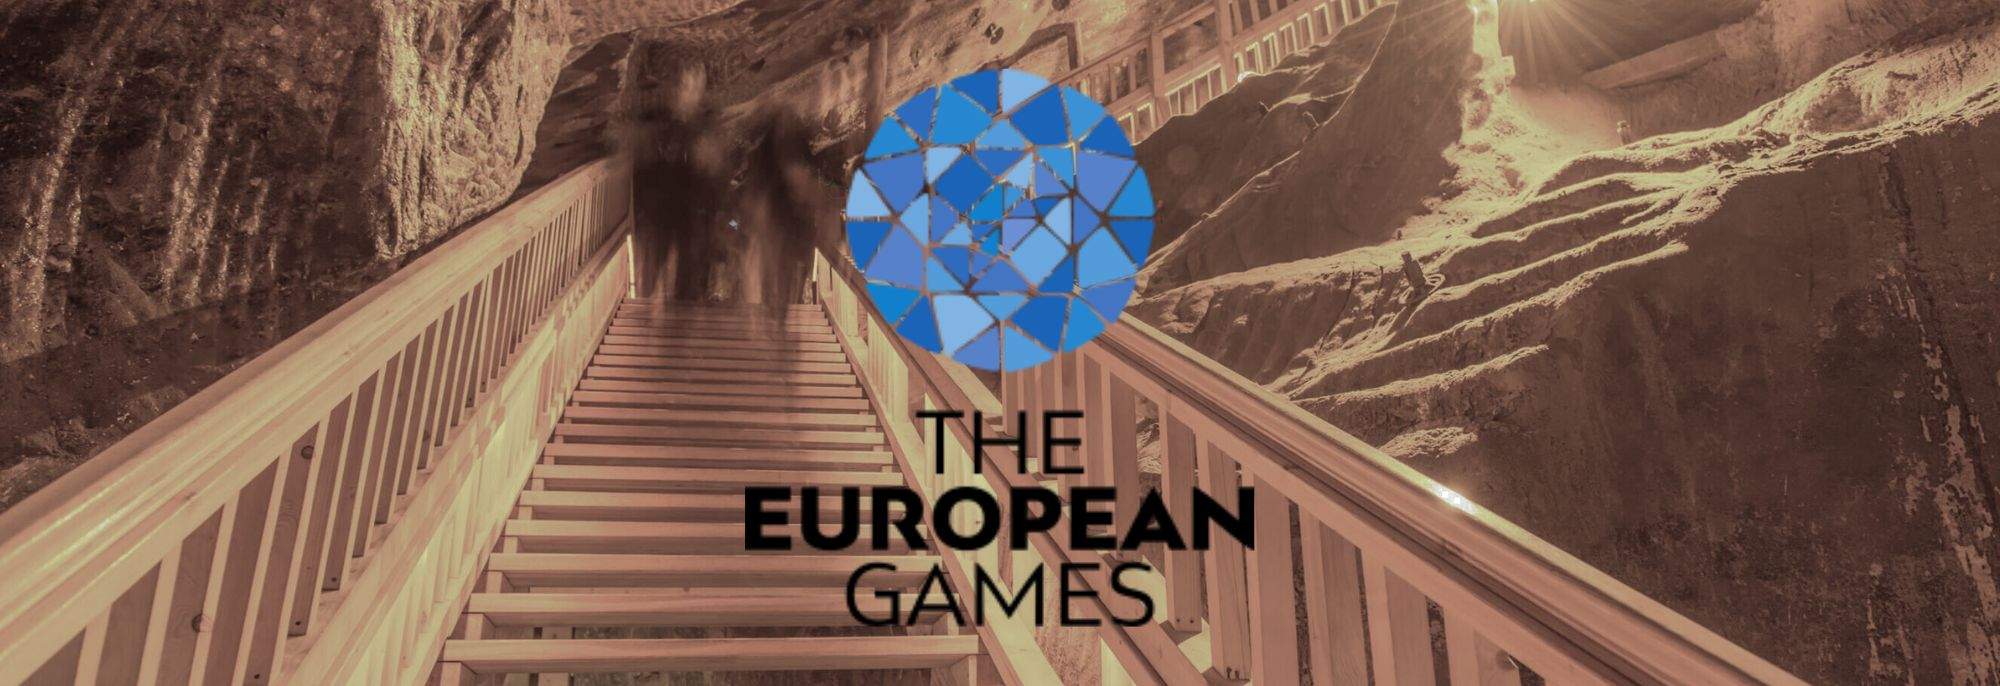 Ondergronds Licht: De Vredesvlam en Medailles van de Europese Spelen Schuilen Diep in de Wieliczka Zoutmijn